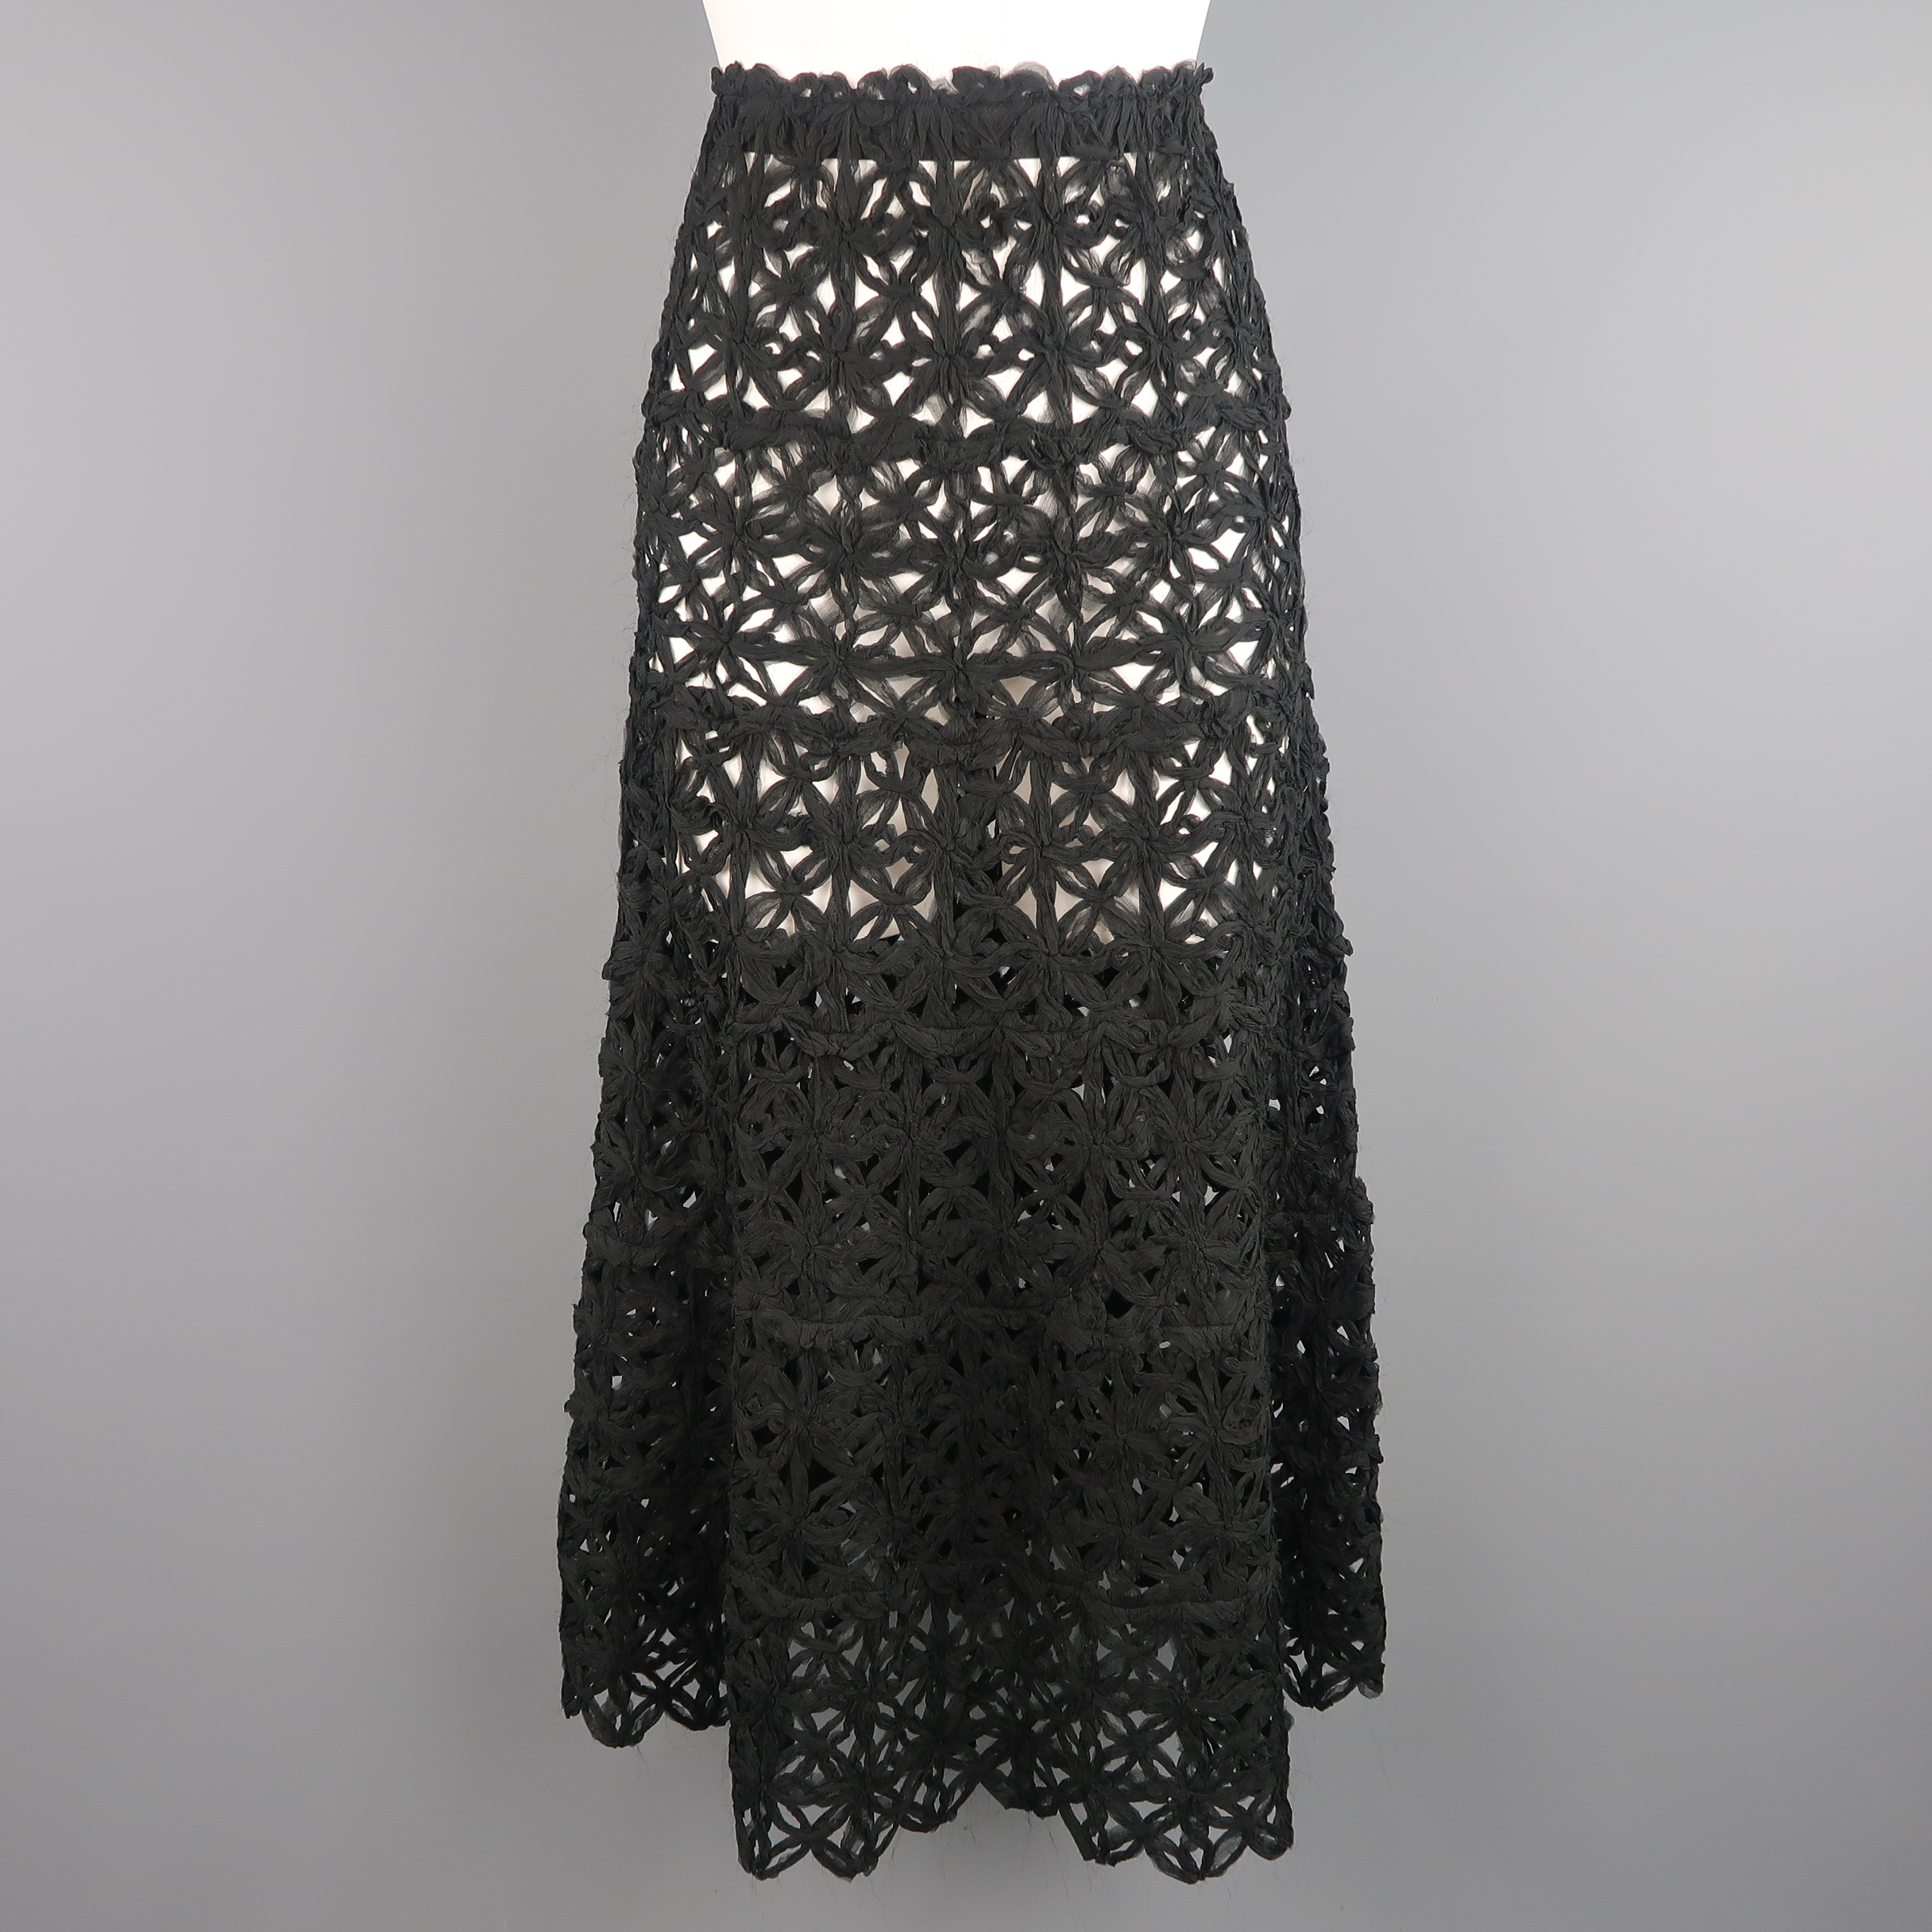 Crochet Maxi Skirt Pattern Donna Karan Size 6 Black Silk Floral Crochet Mesh A Line Maxi Skirt